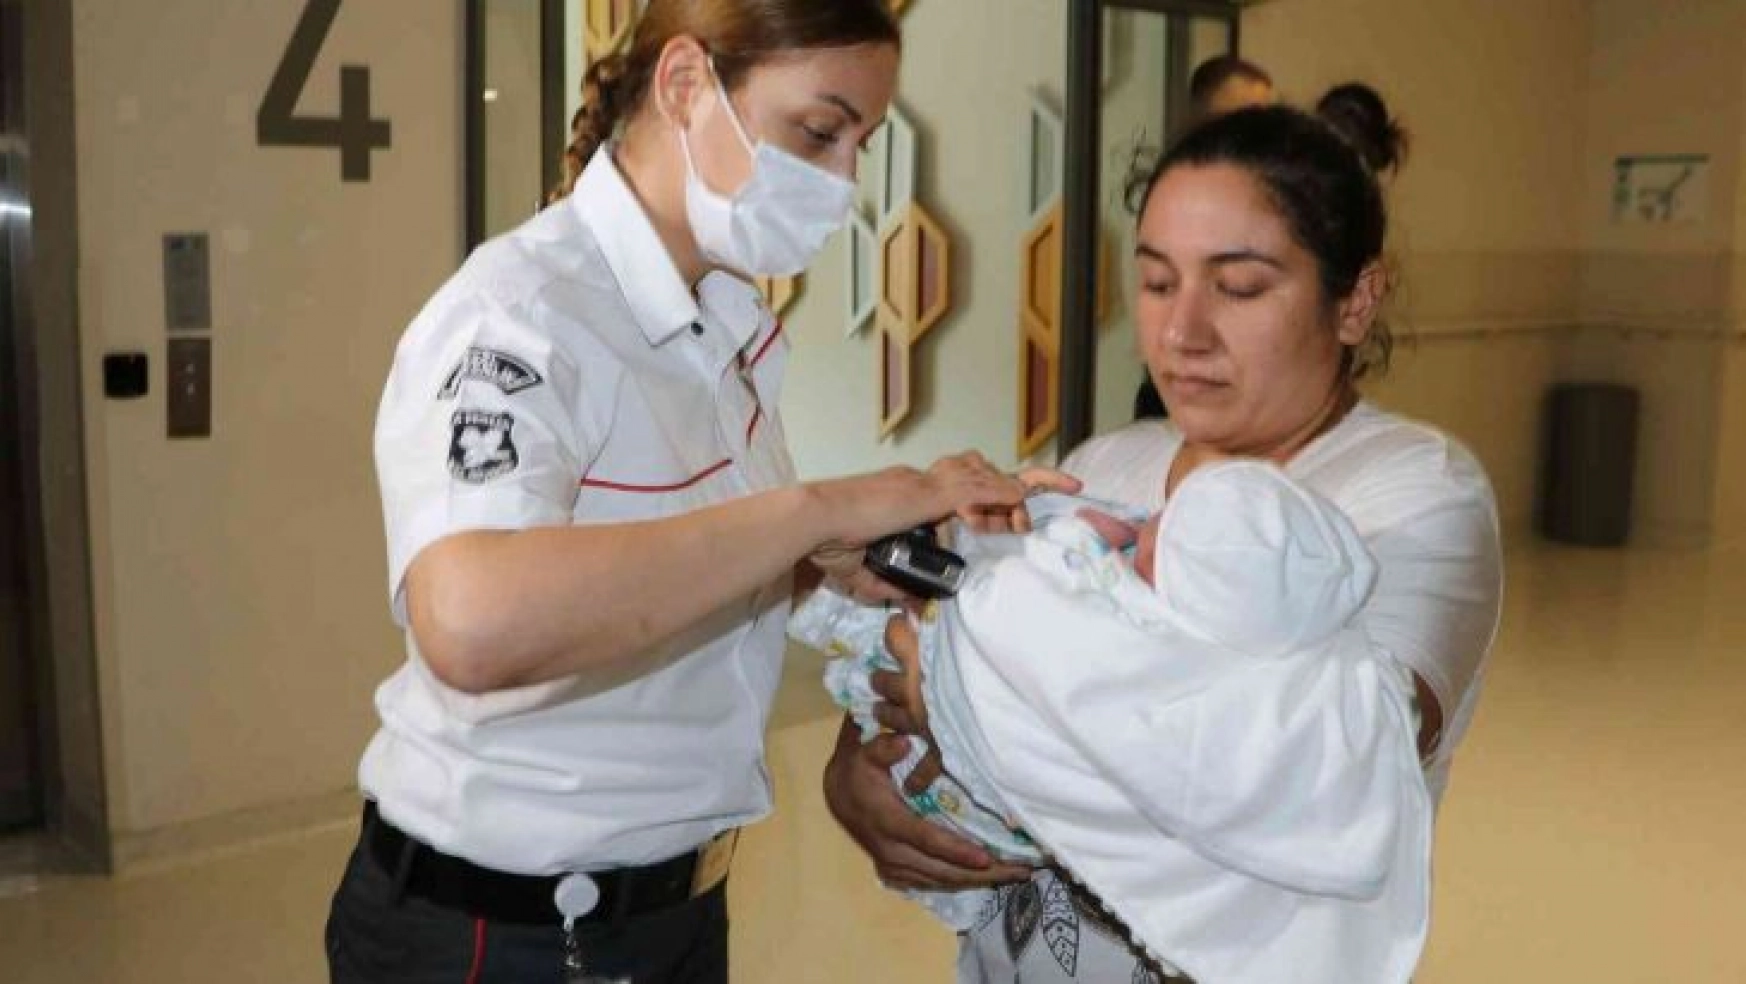 Bu hastanede bebekler ve anneleri çipli bileklikler ile güvende